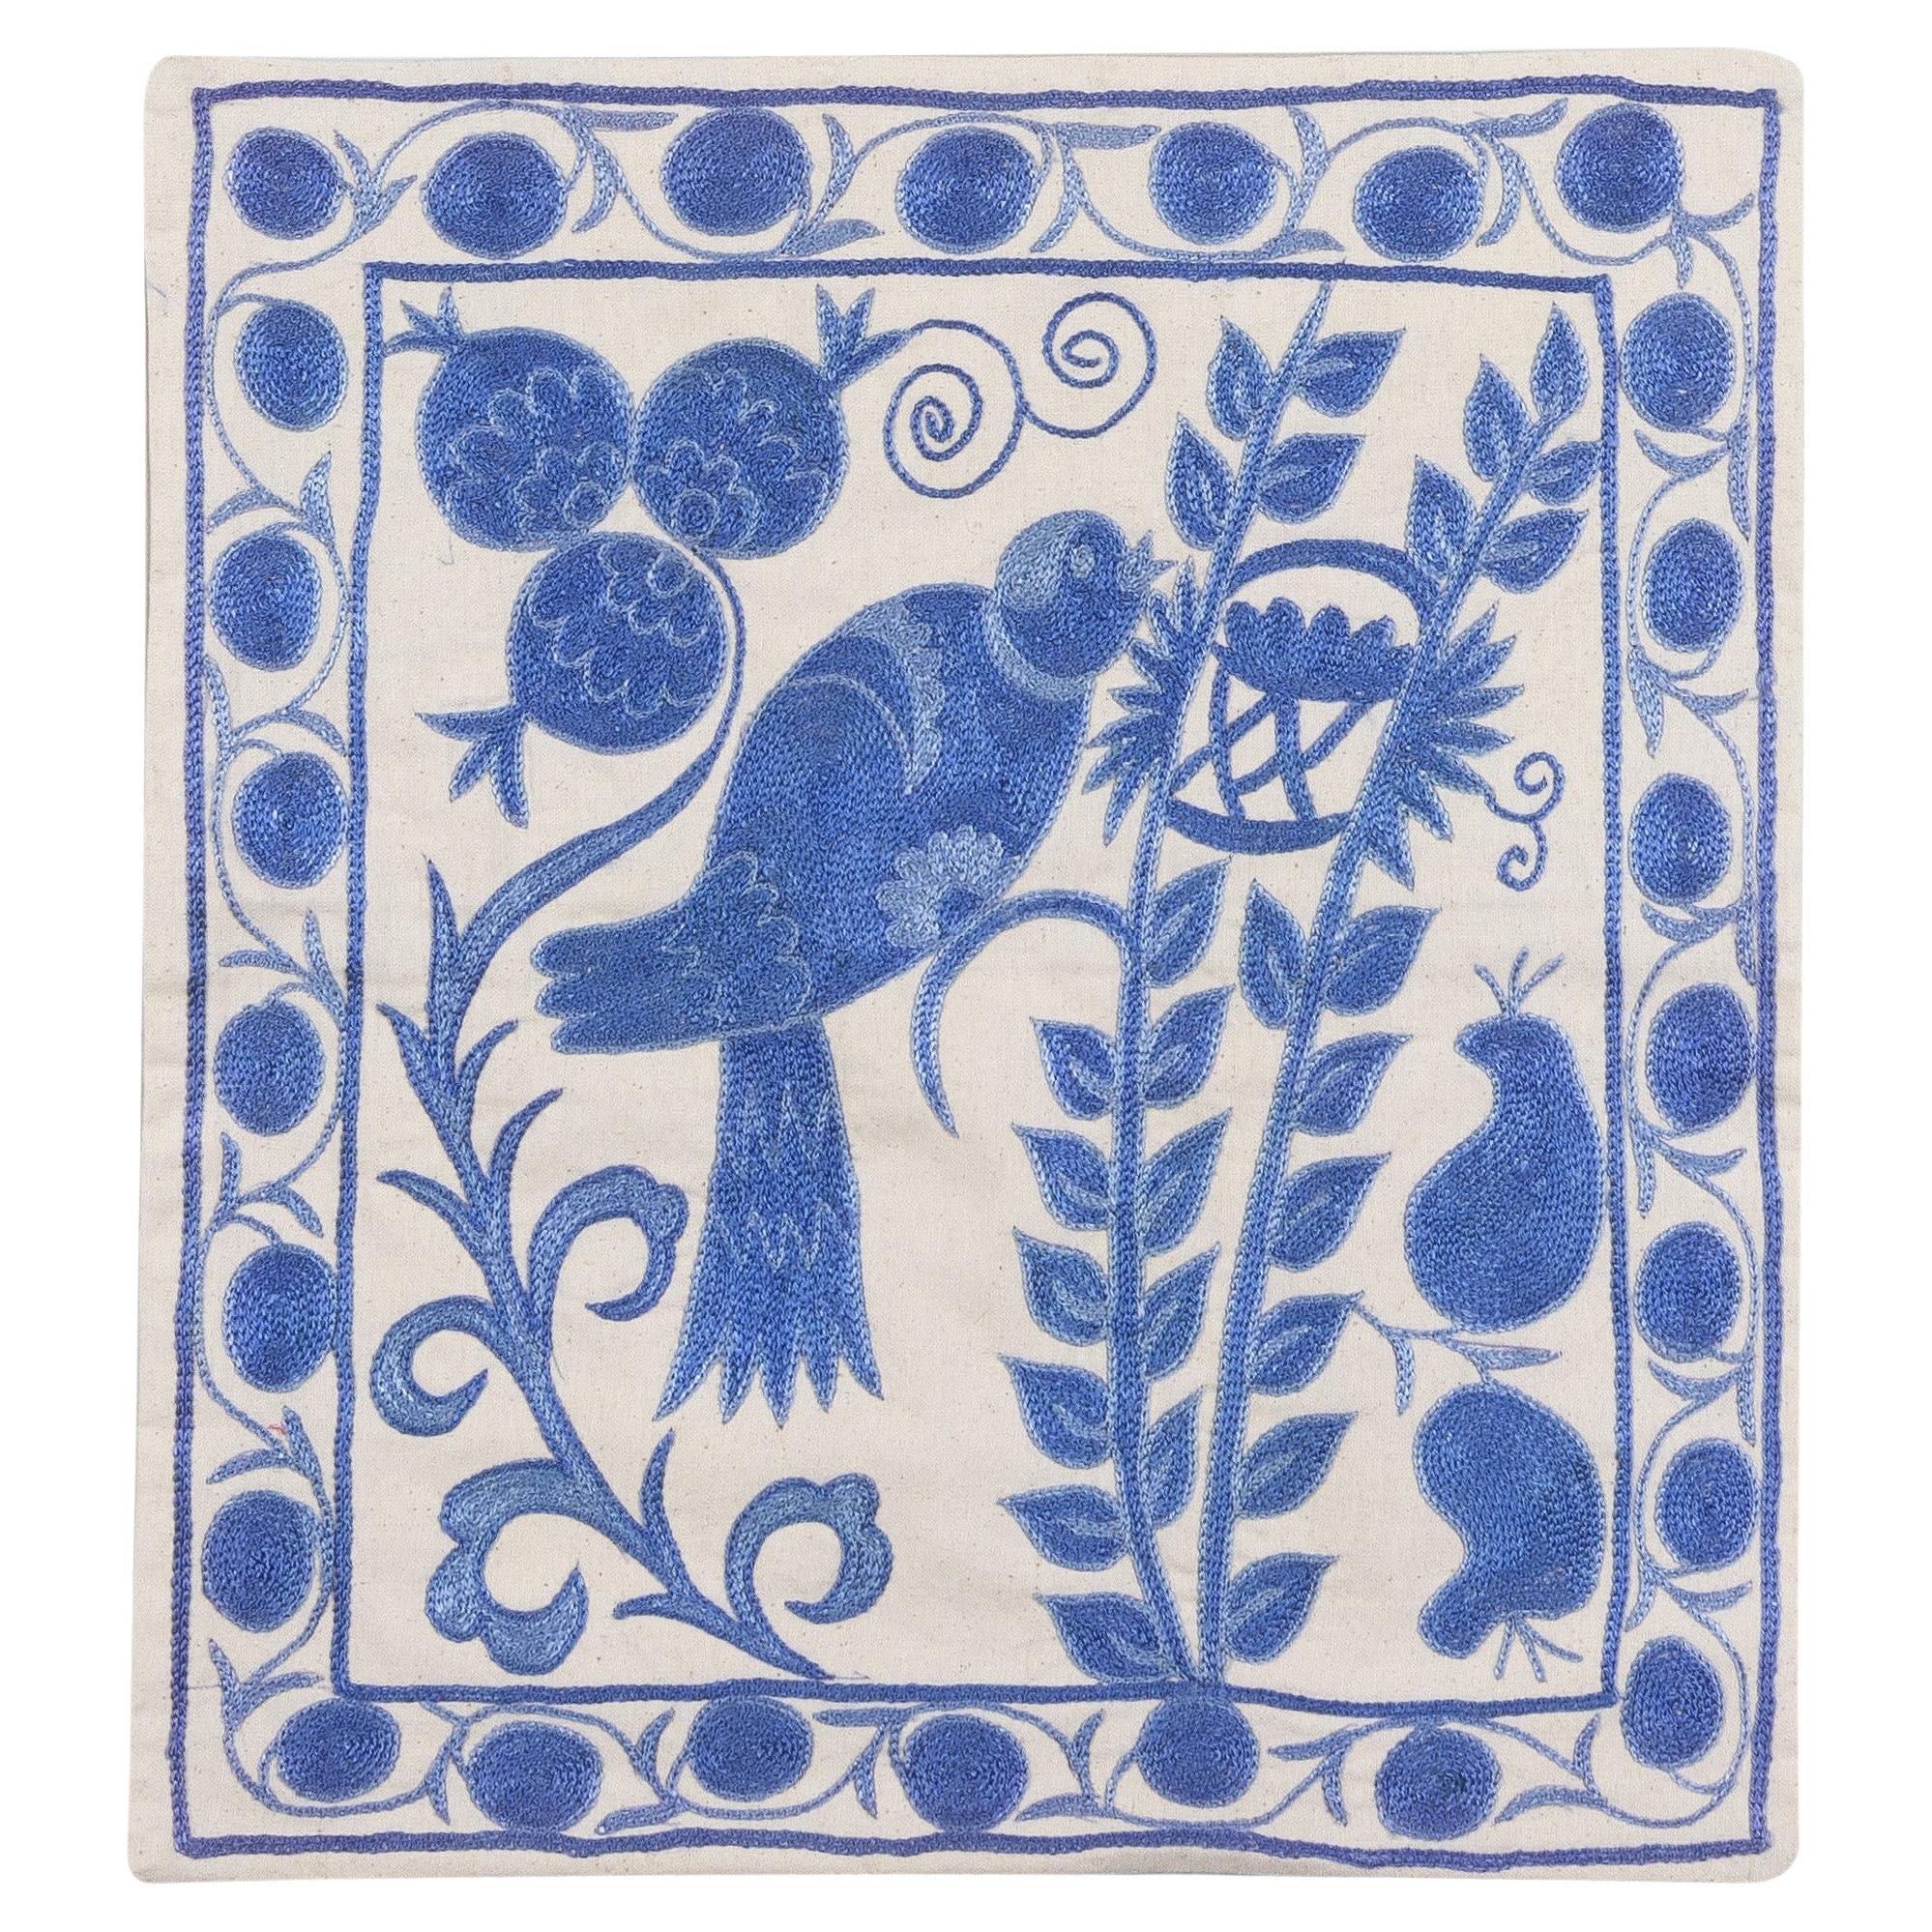 19 "x19" Coussin carré à motifs d'oiseaux en broderie de soie Suzani en ivoire et bleu